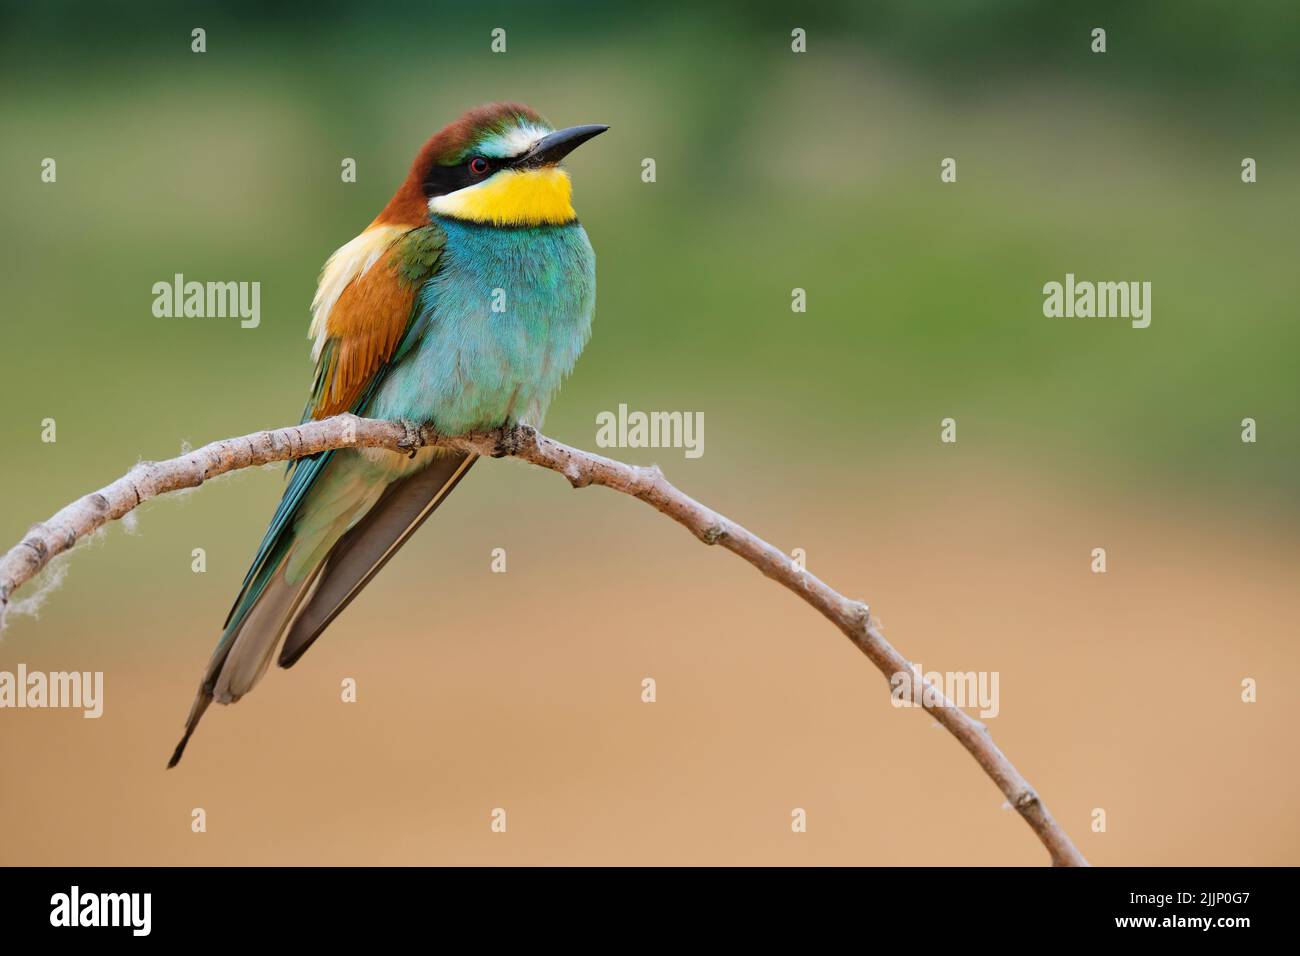 Colourful uccello europeo del mangiatore dell'ape con piumaggio luminoso che si siede su ramoscello sottile nella natura sullo sfondo sfocato il giorno d'estate Foto Stock